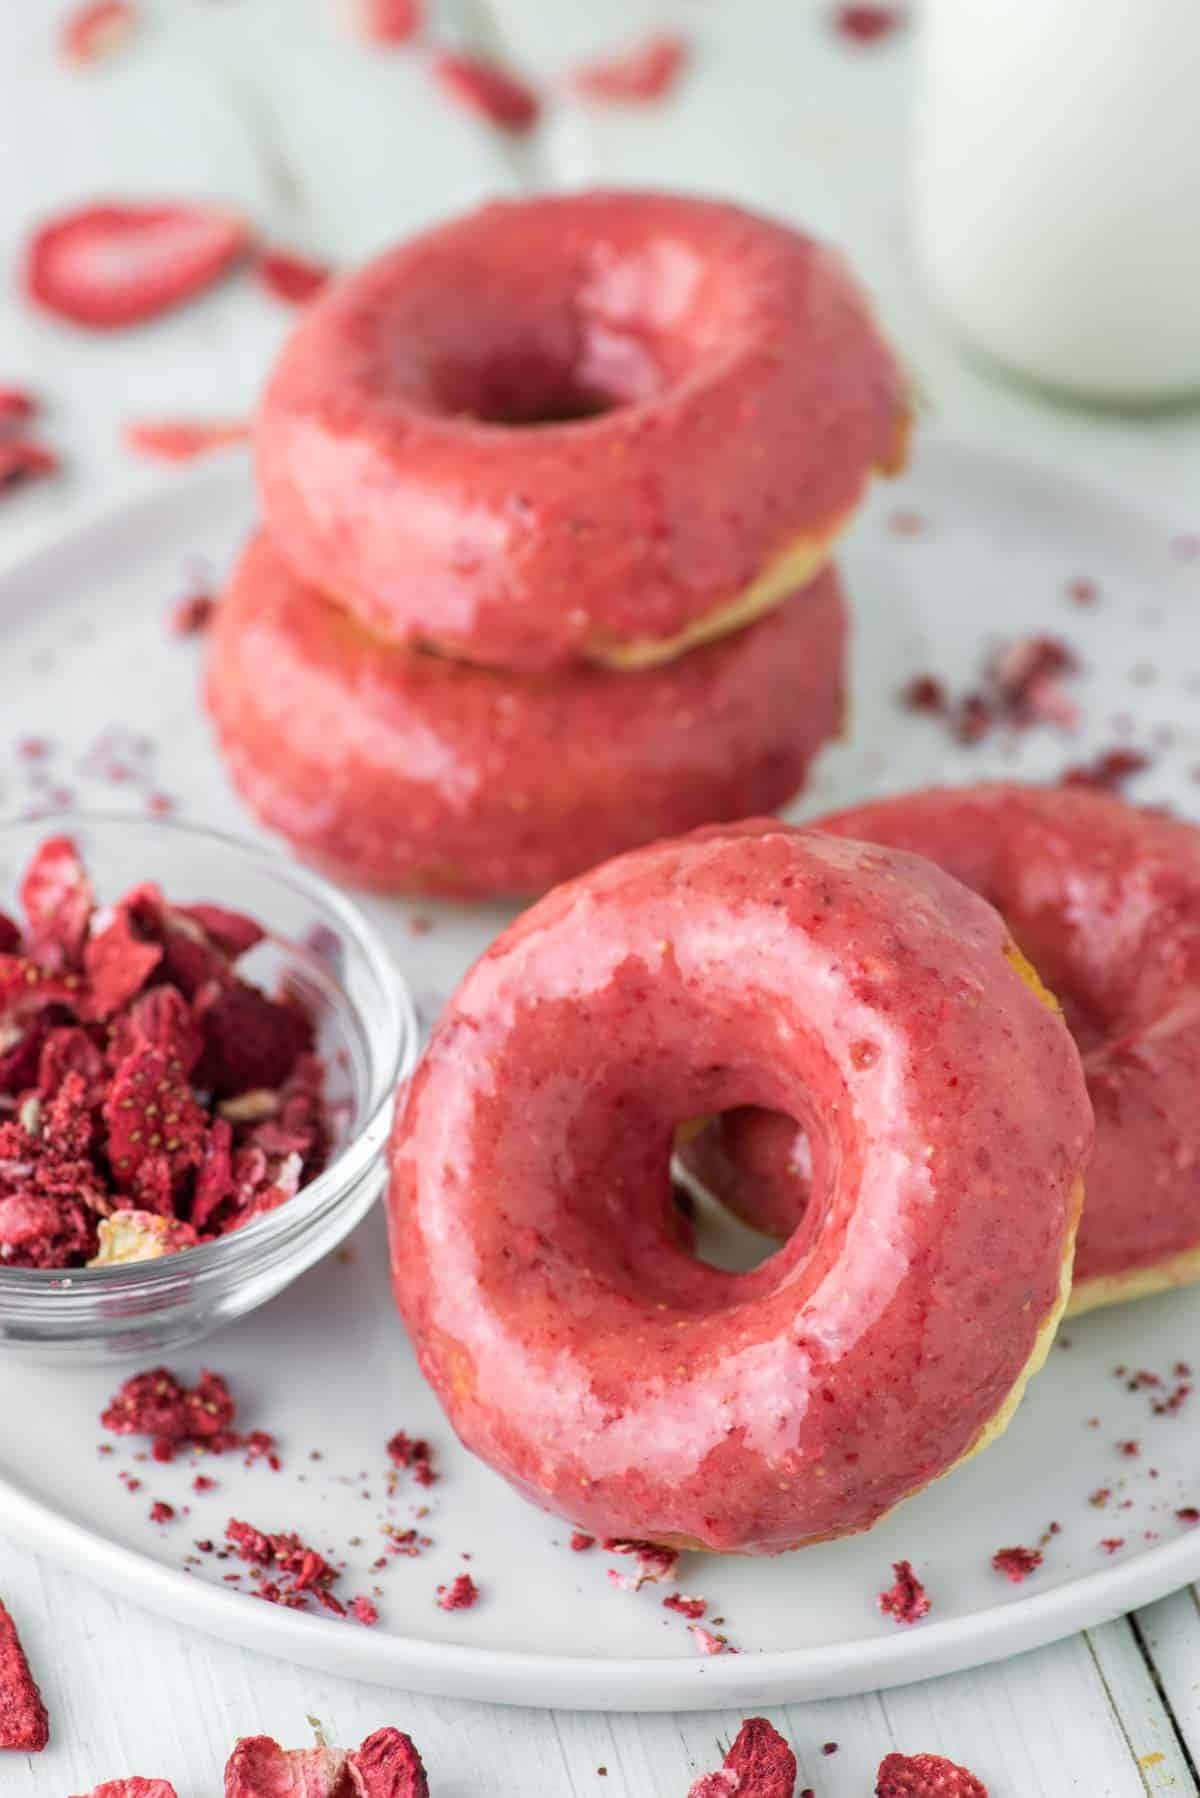 Enjoy a freshly glazed donut treat Wallpaper